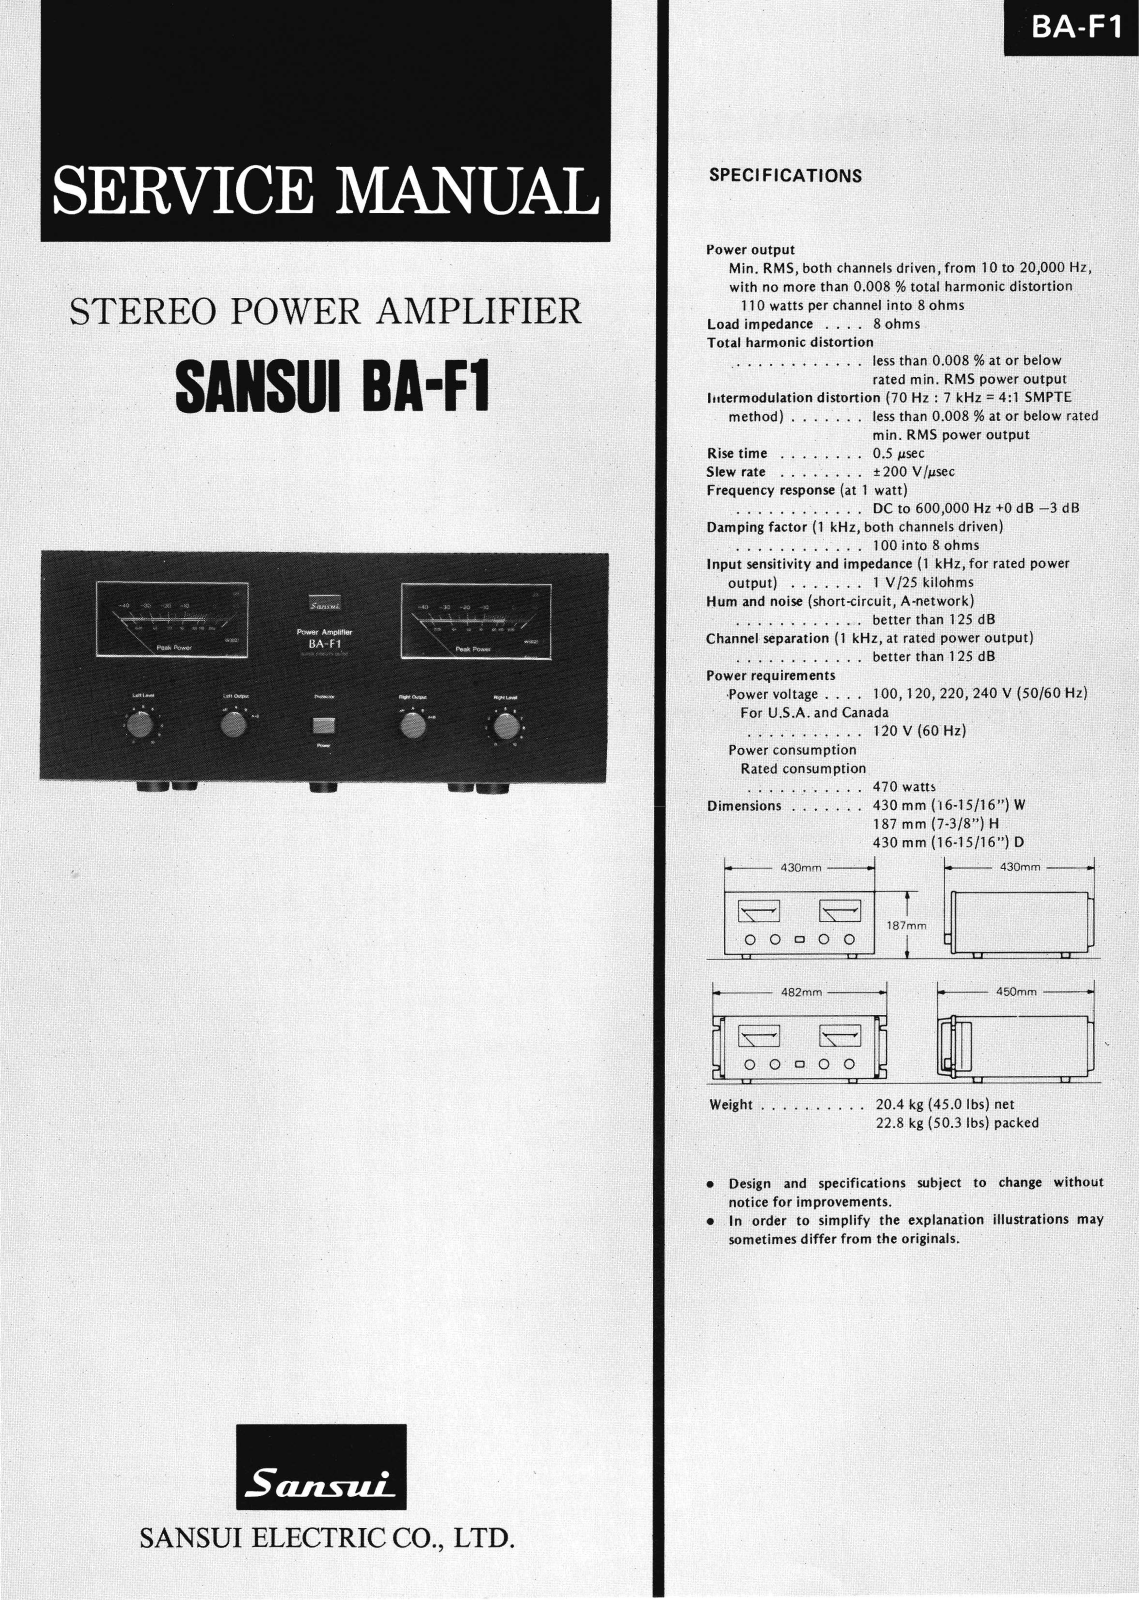 Sansui BA-F1 Service Manual